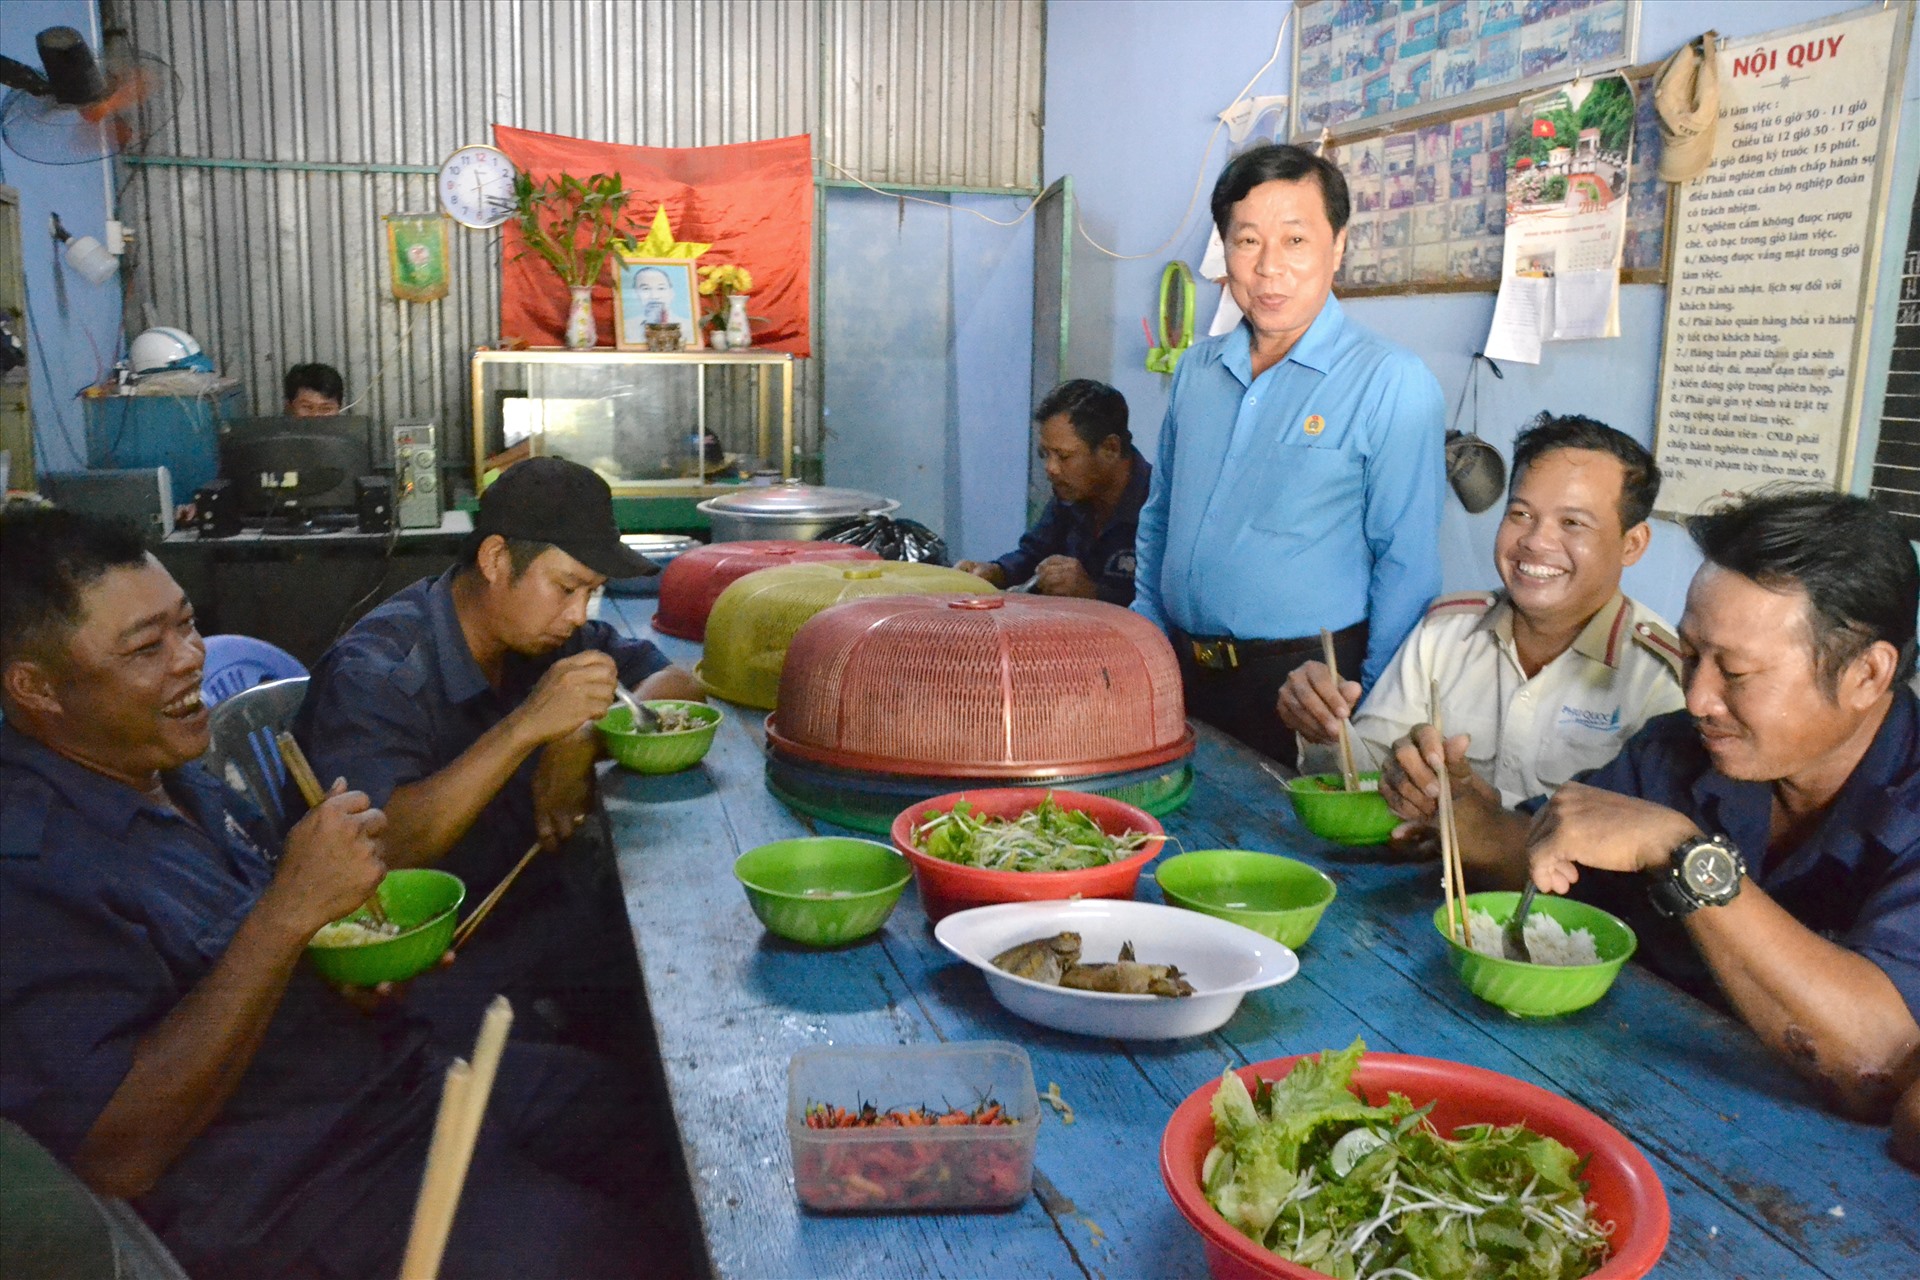 Đoàn viên Nghiệp đoàn bốc xếp Hàm Ninh tỏ ra vui vẻ và hoan hỷ khi được Chủ tịch LĐLĐ Kiên Giang thăm hỏi và quan tâm chất lượng bữa ăn. Ảnh: LT